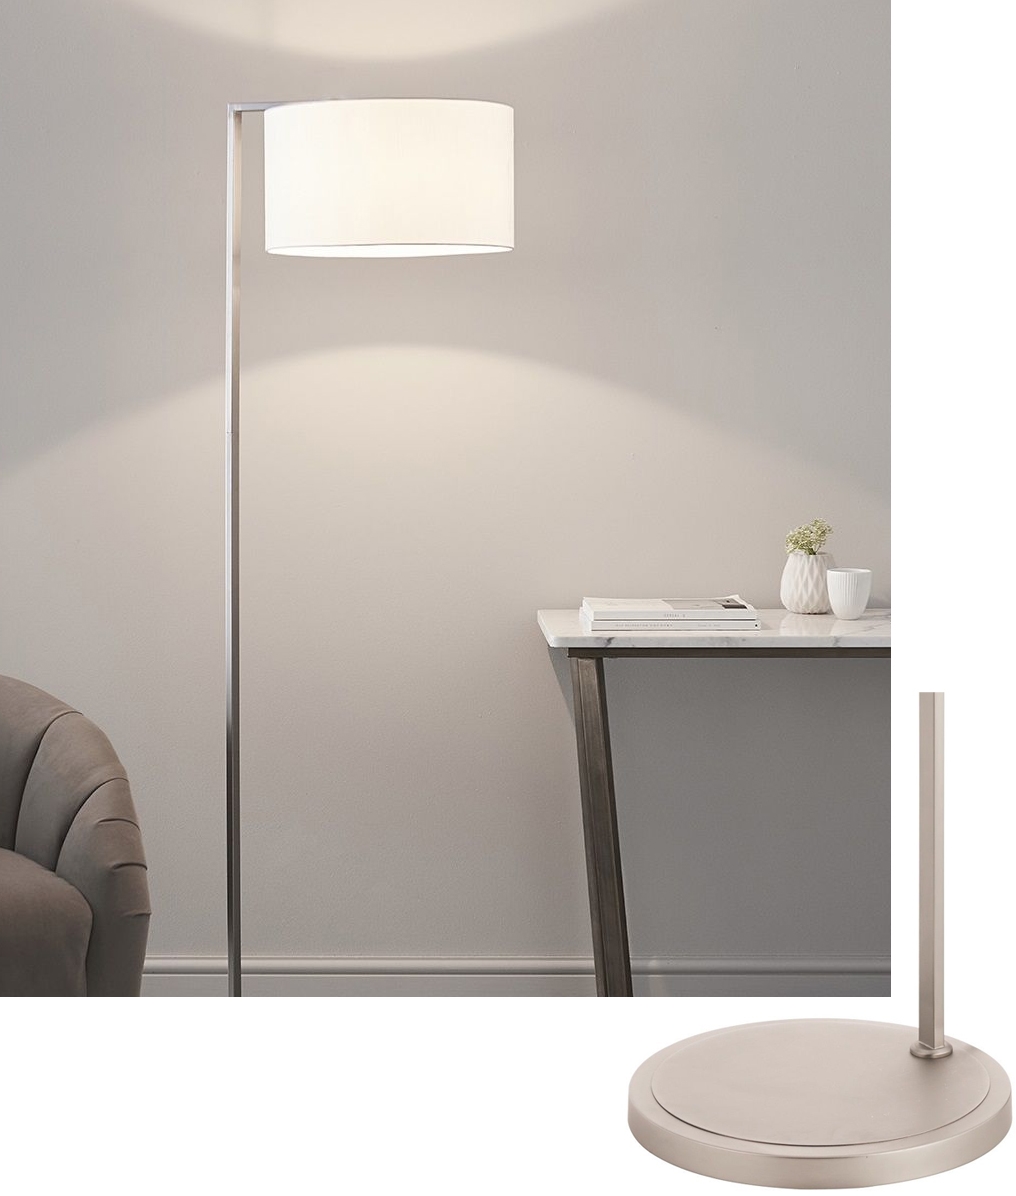 Matt Nickel Contemporary Floor Lamp, Contemporary Lamp Shades For Floor Lamps